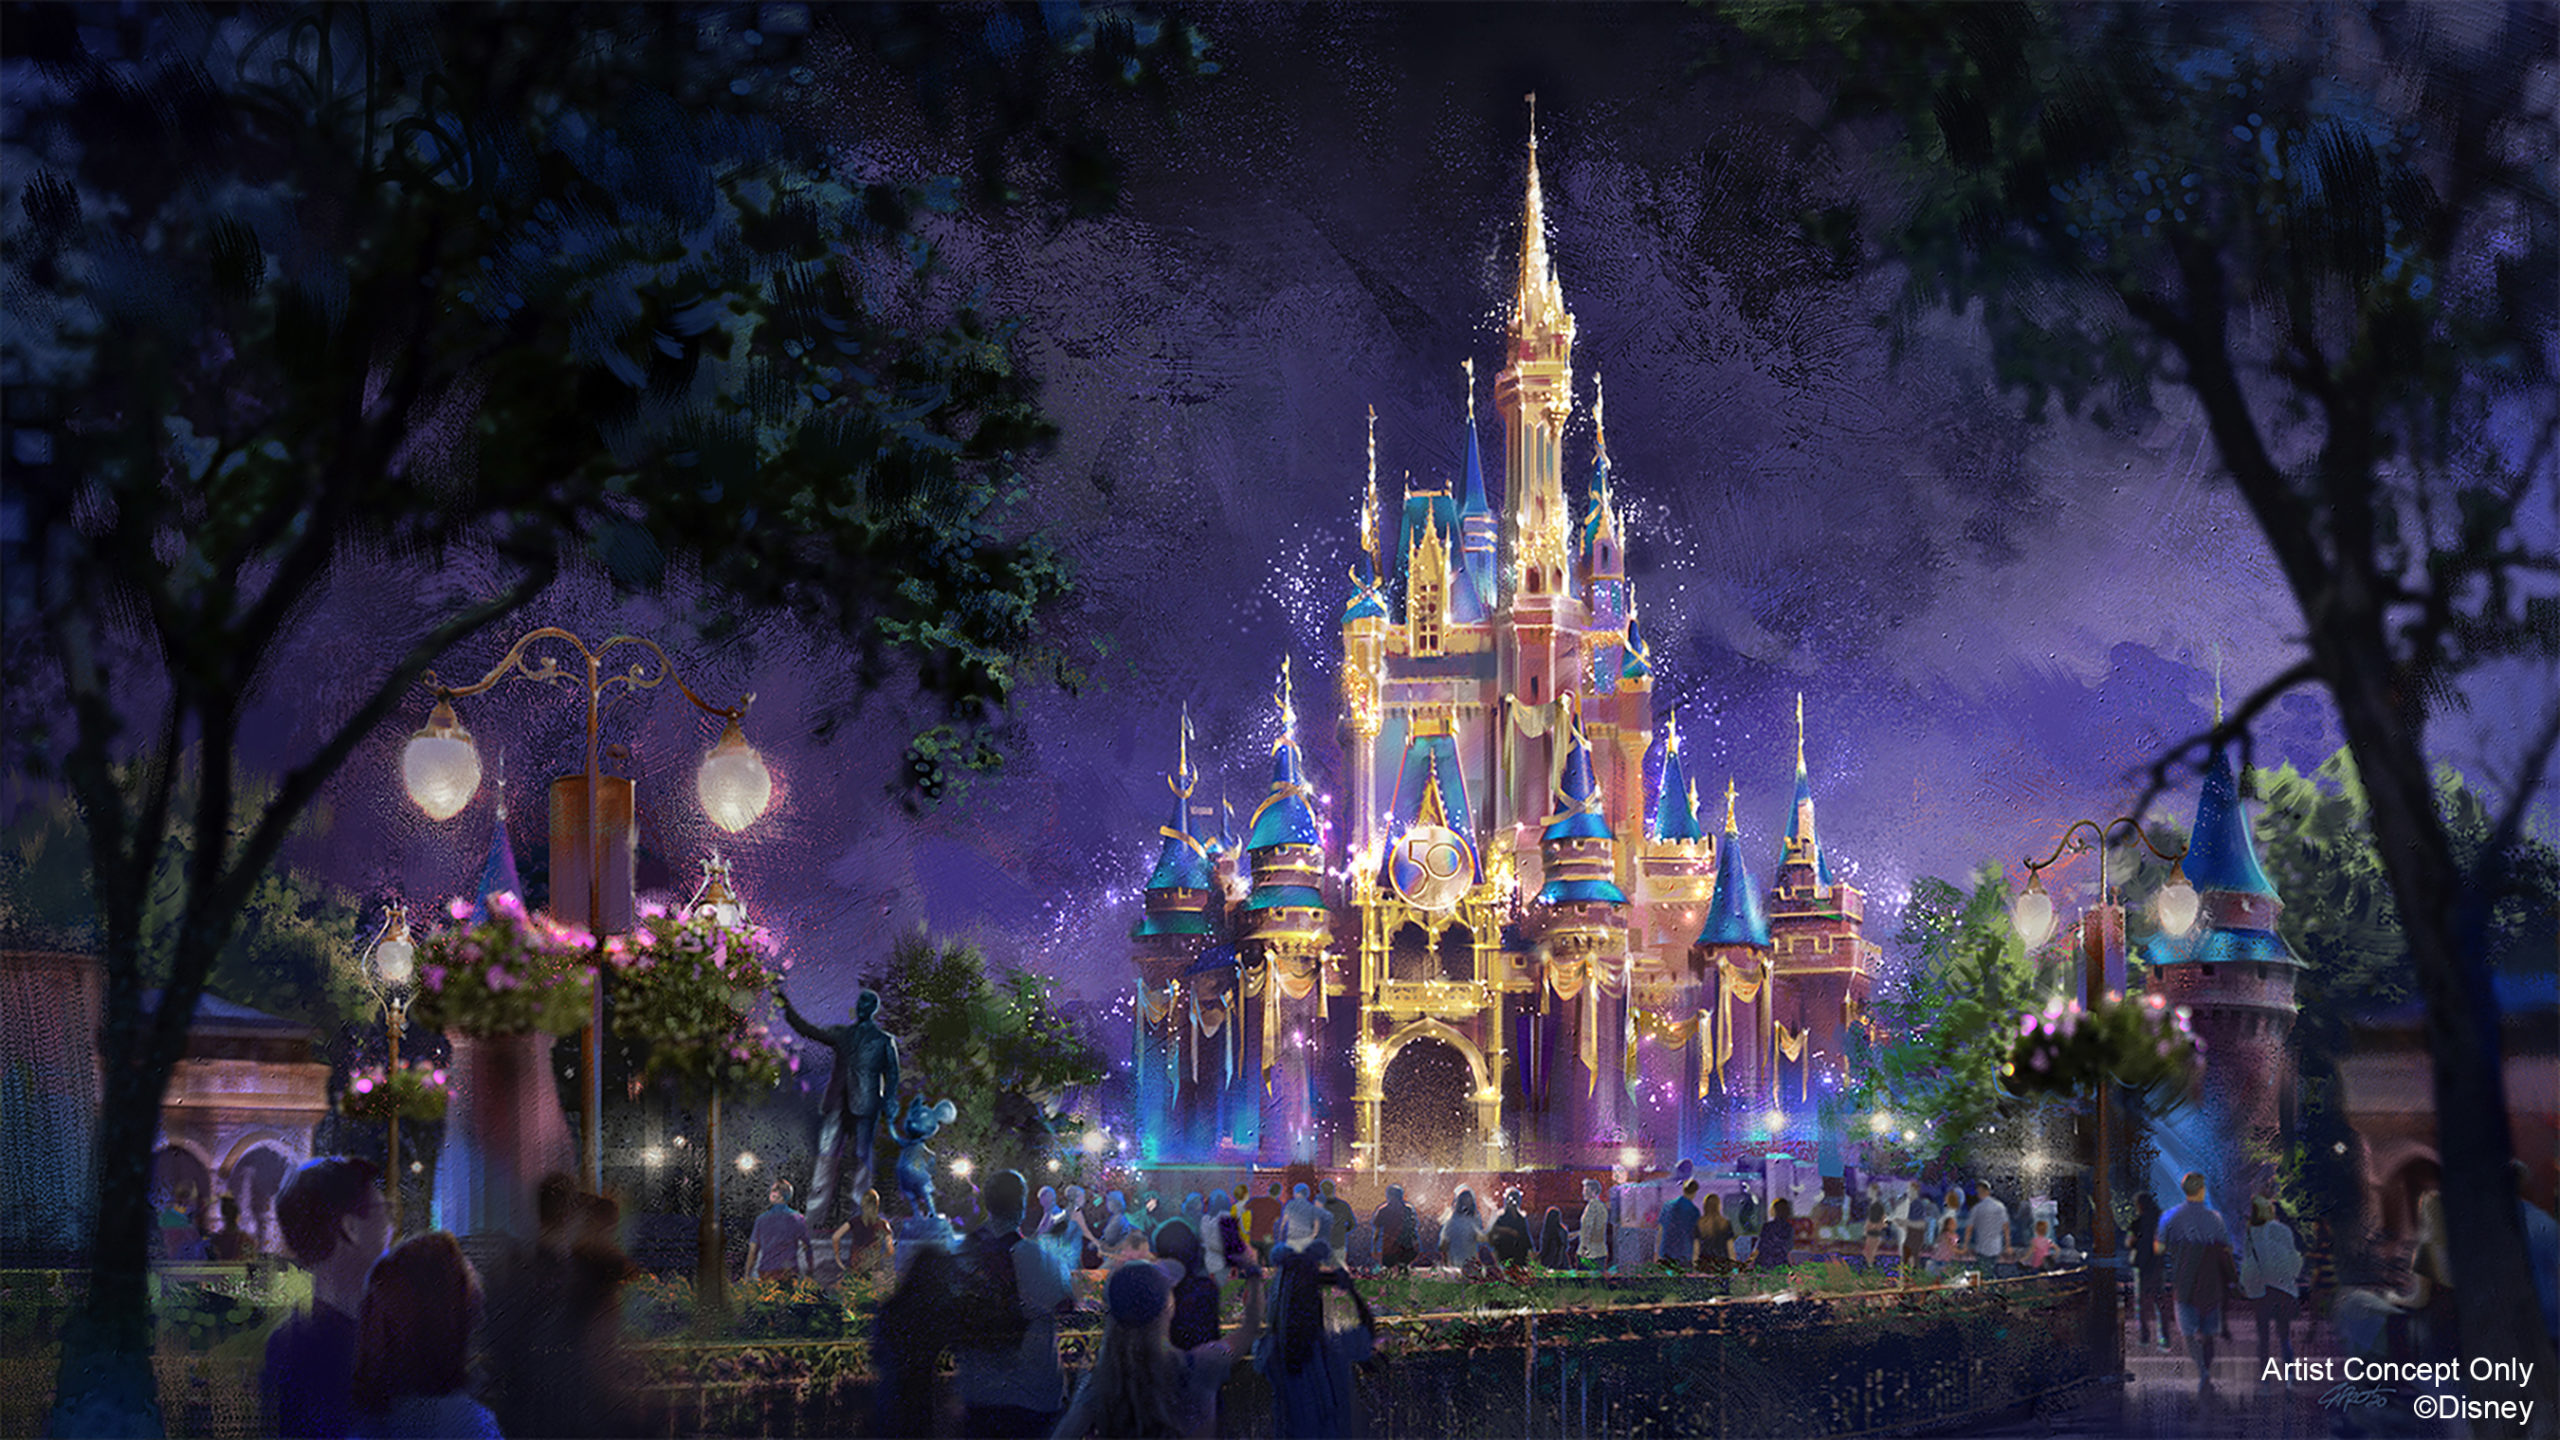 Cinderella Castle becomes a Beacon of Magic